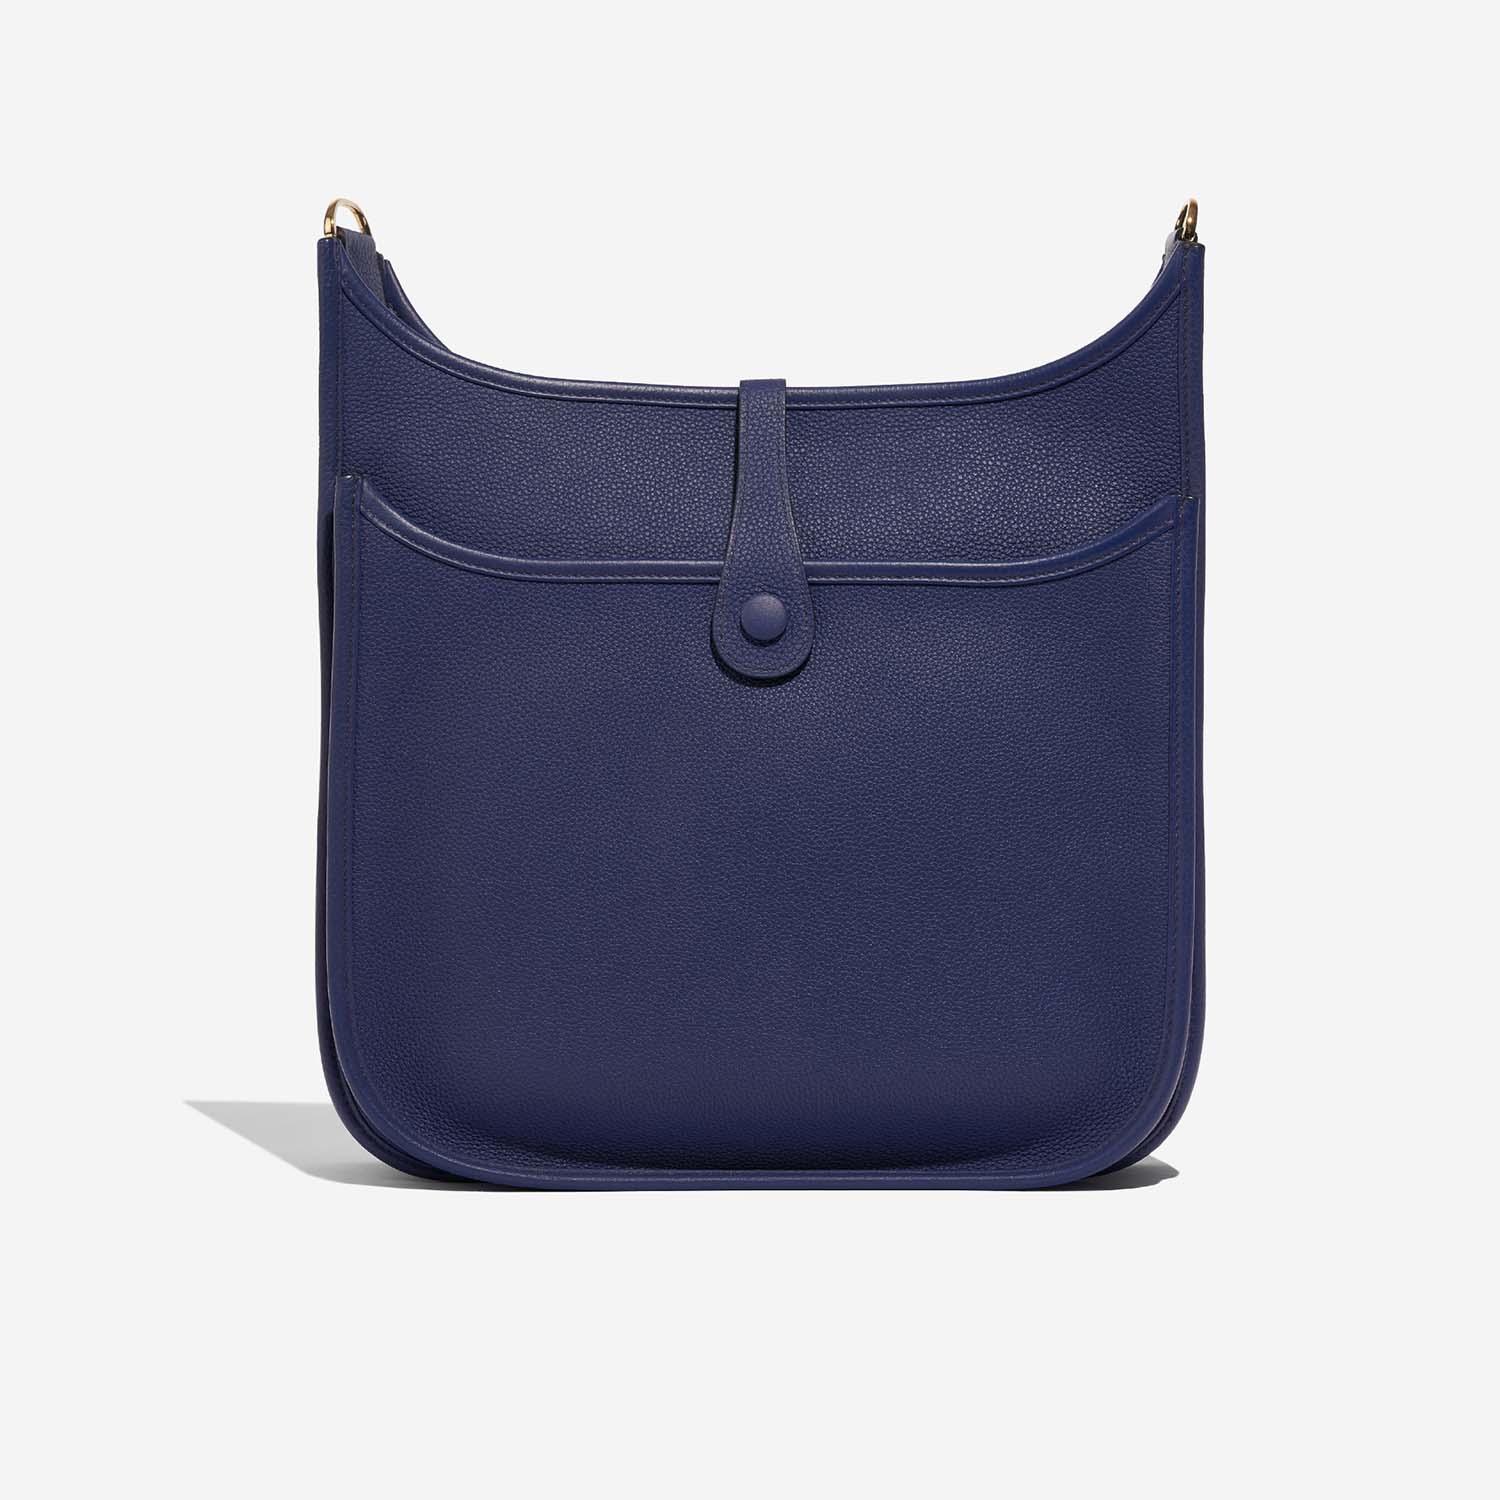 Hermès Evelyne 29 BleuSapphire Zurück | Verkaufen Sie Ihre Designertasche auf Saclab.com